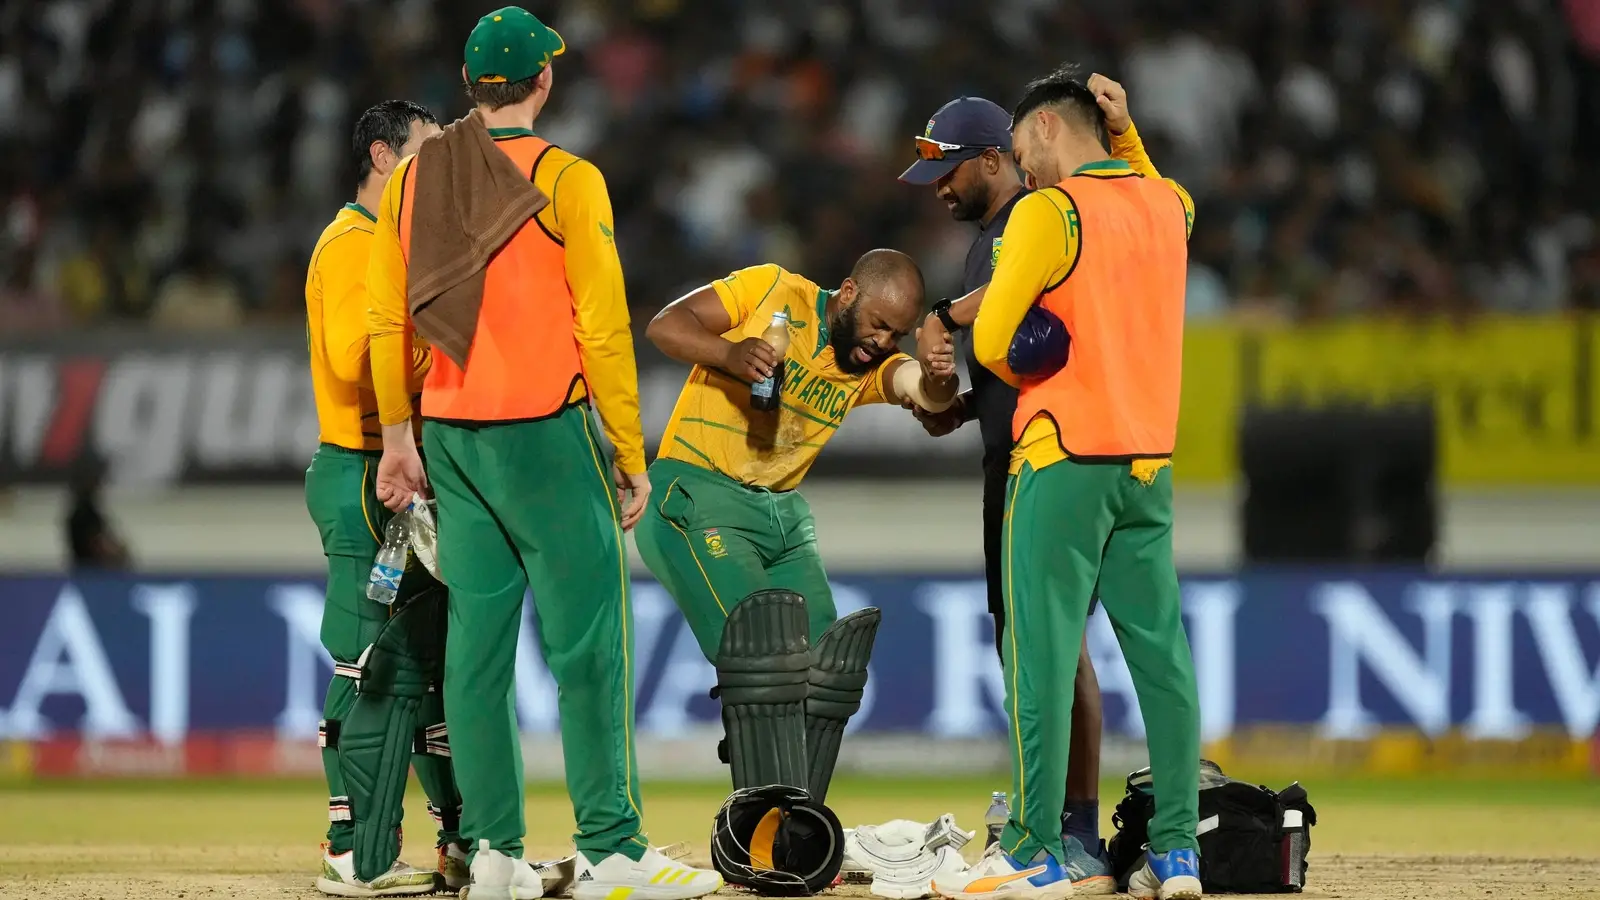  दक्षिण अफ्रीका की विश्व कप योग्यता उम्मीदों पर पानी फेर |  क्रिकेट
